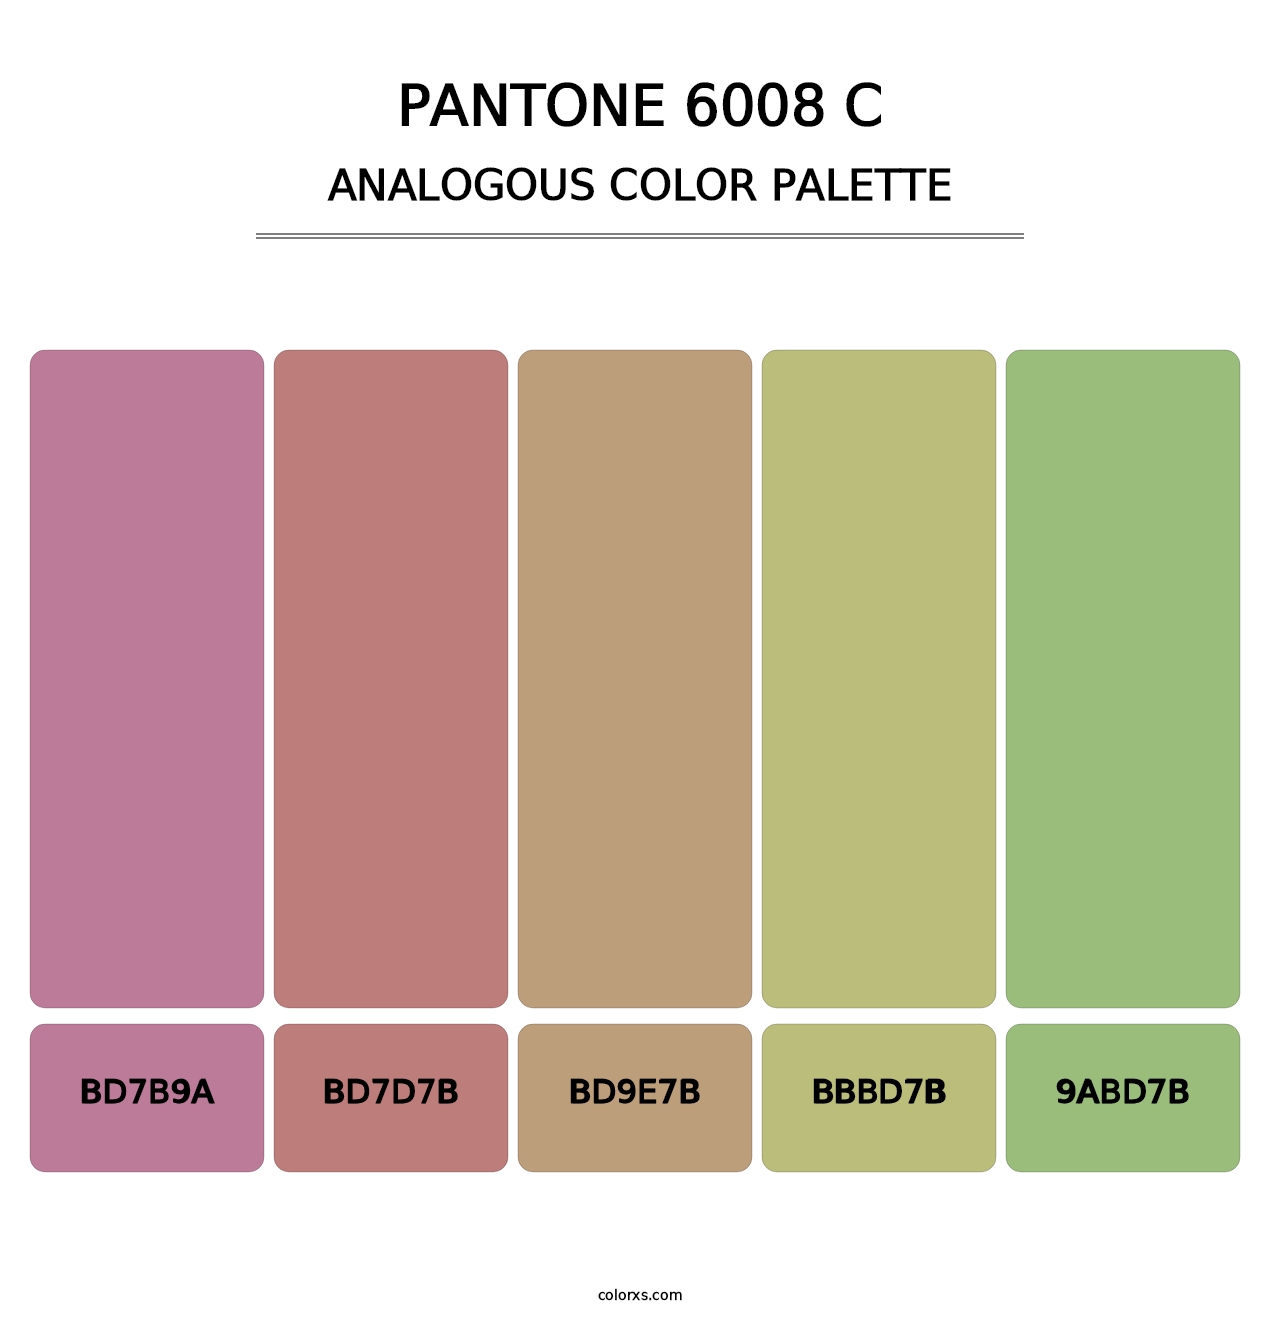 PANTONE 6008 C - Analogous Color Palette